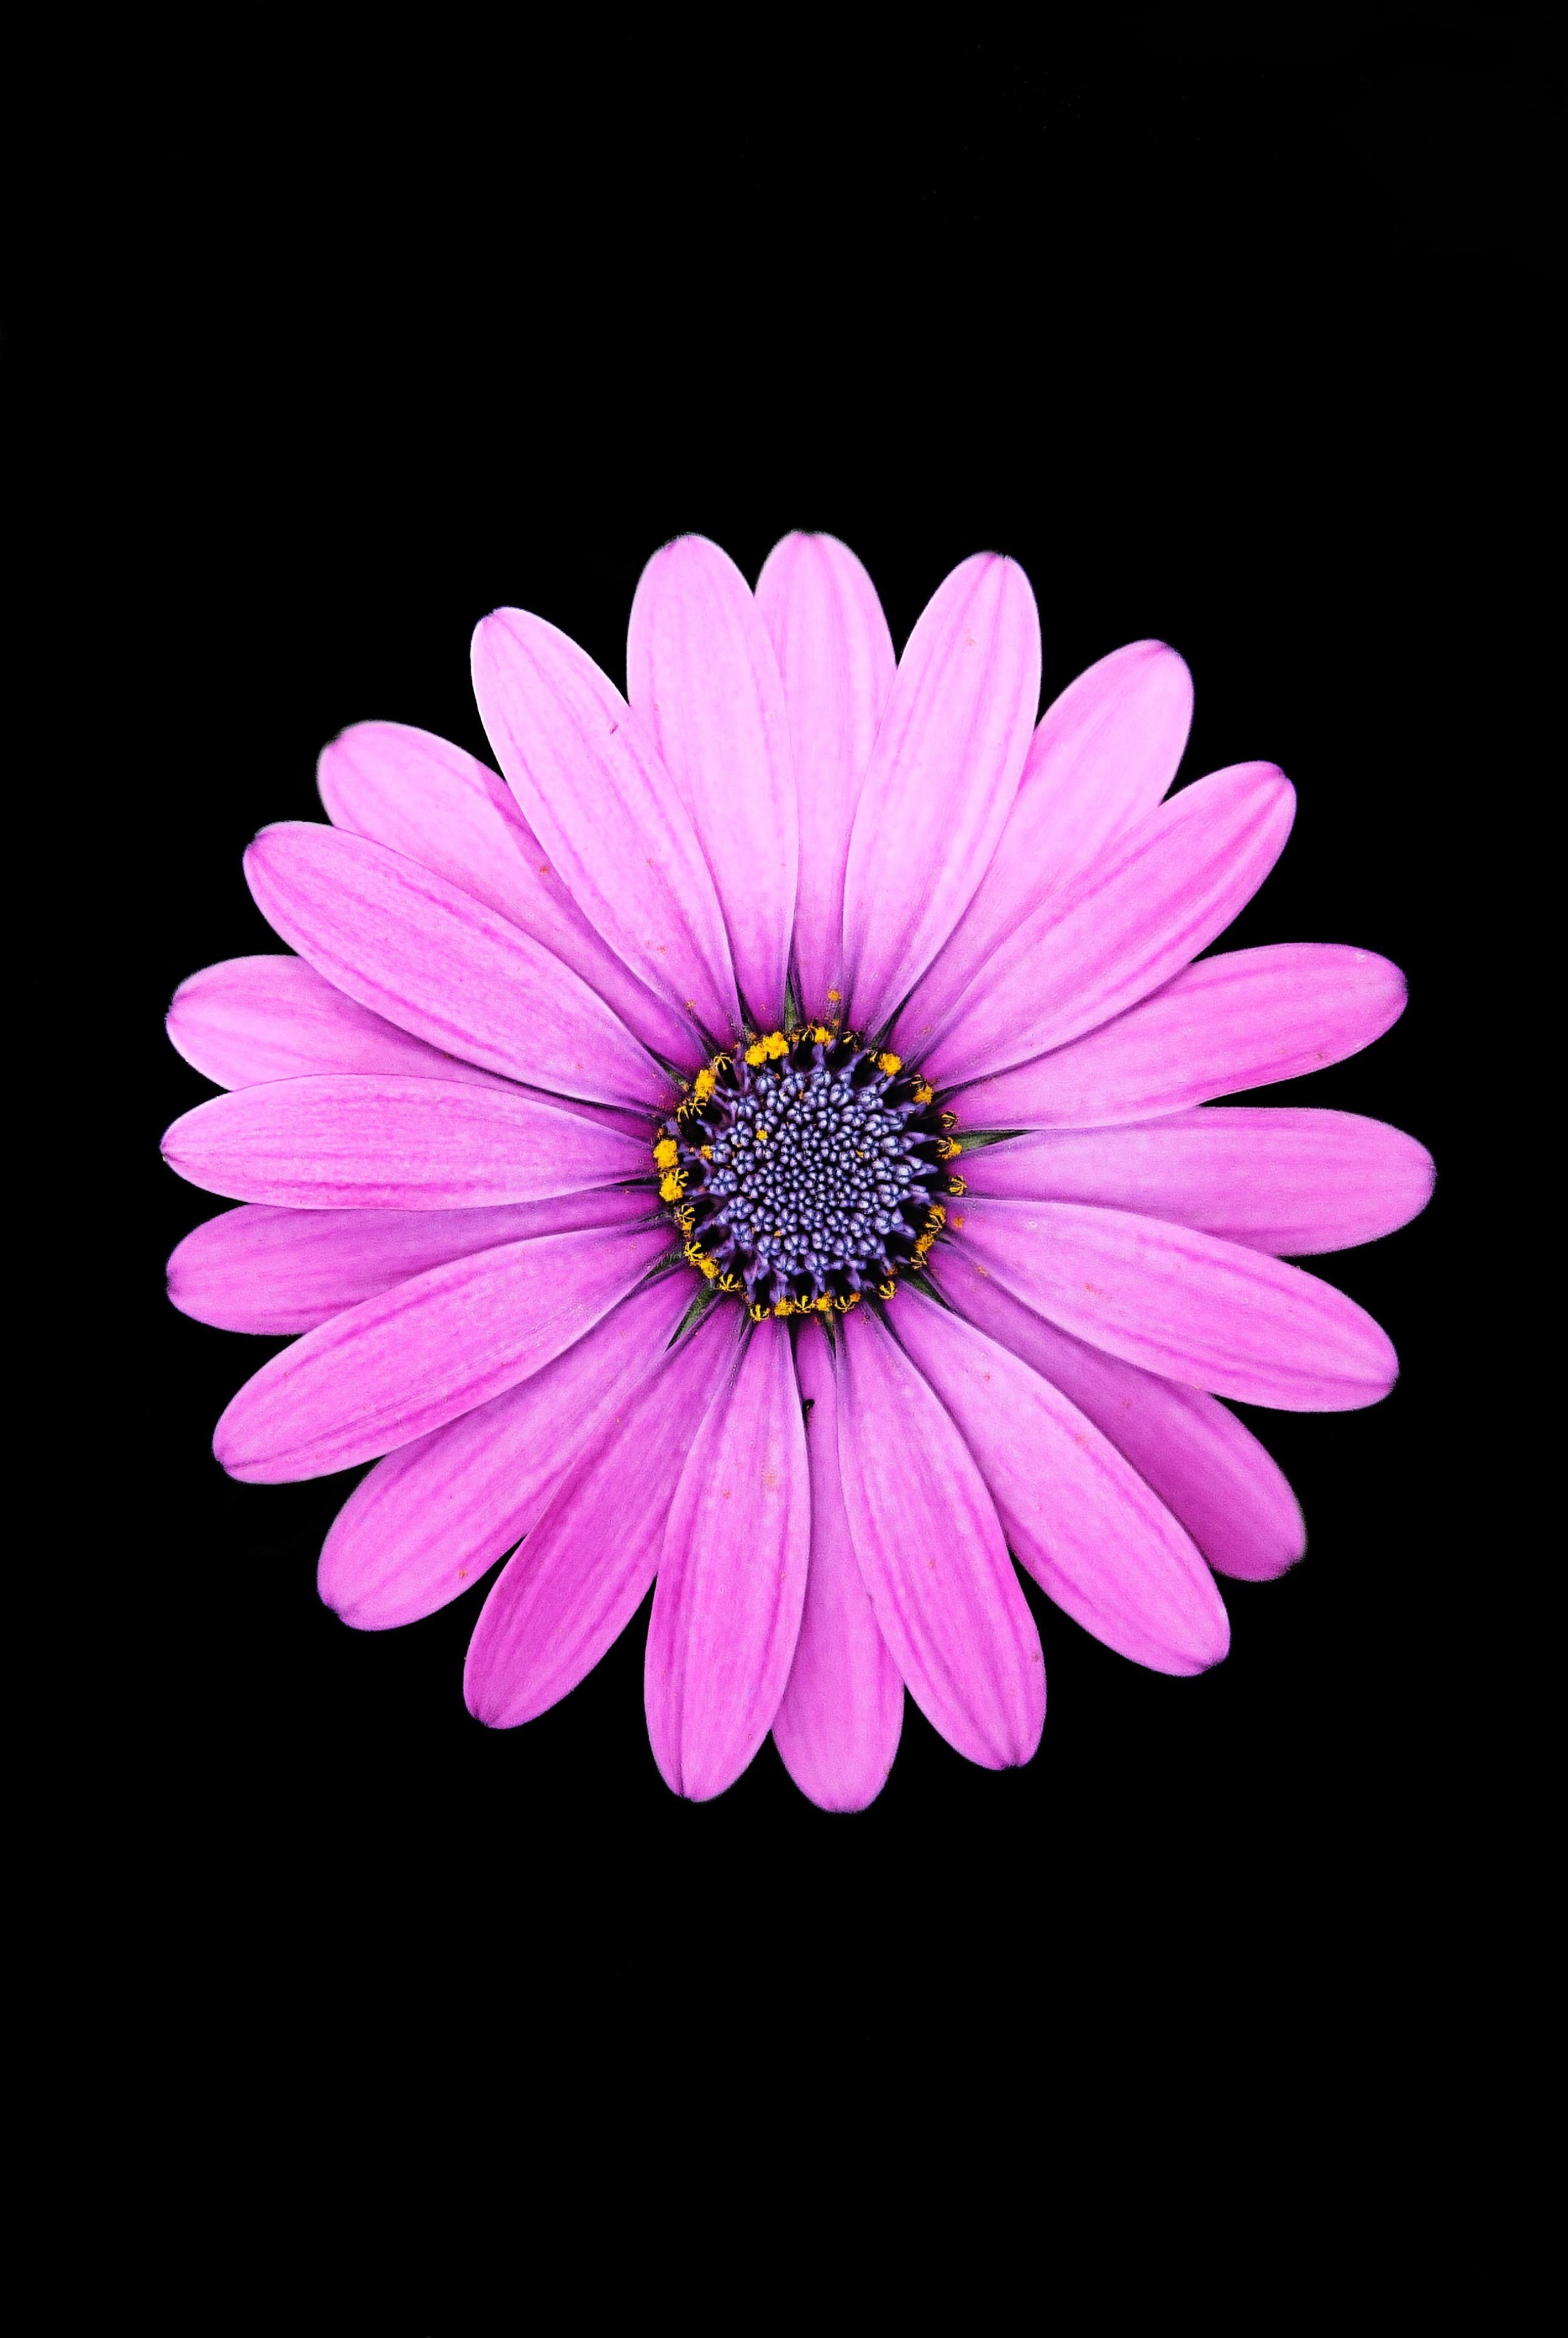 AMOLED Flower Wallpaper. Purple daisy, Daisy wallpaper, Dark